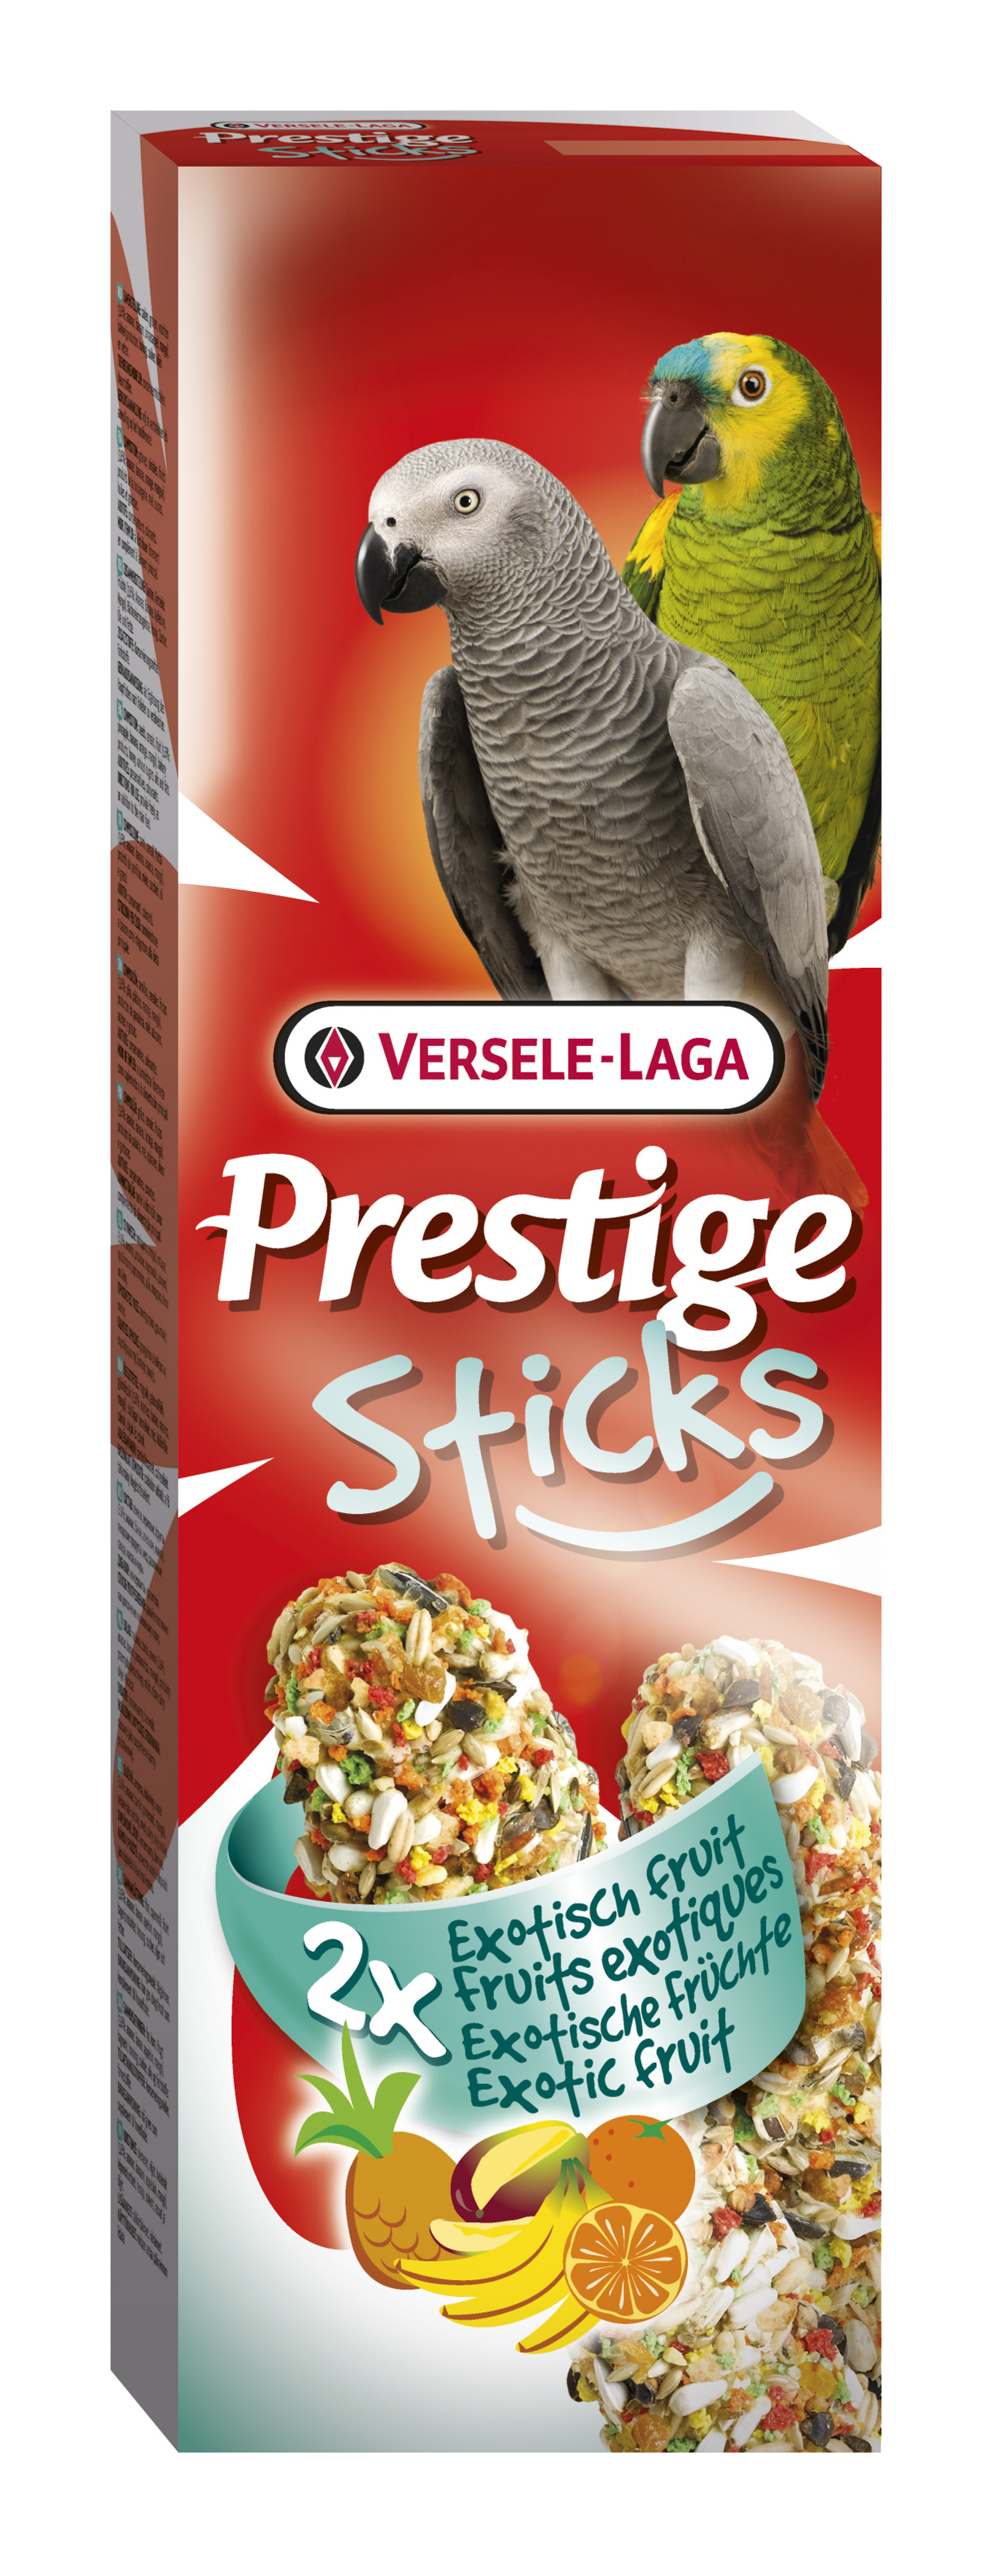 Bilde av Prestige Sticks Parrots Exotic